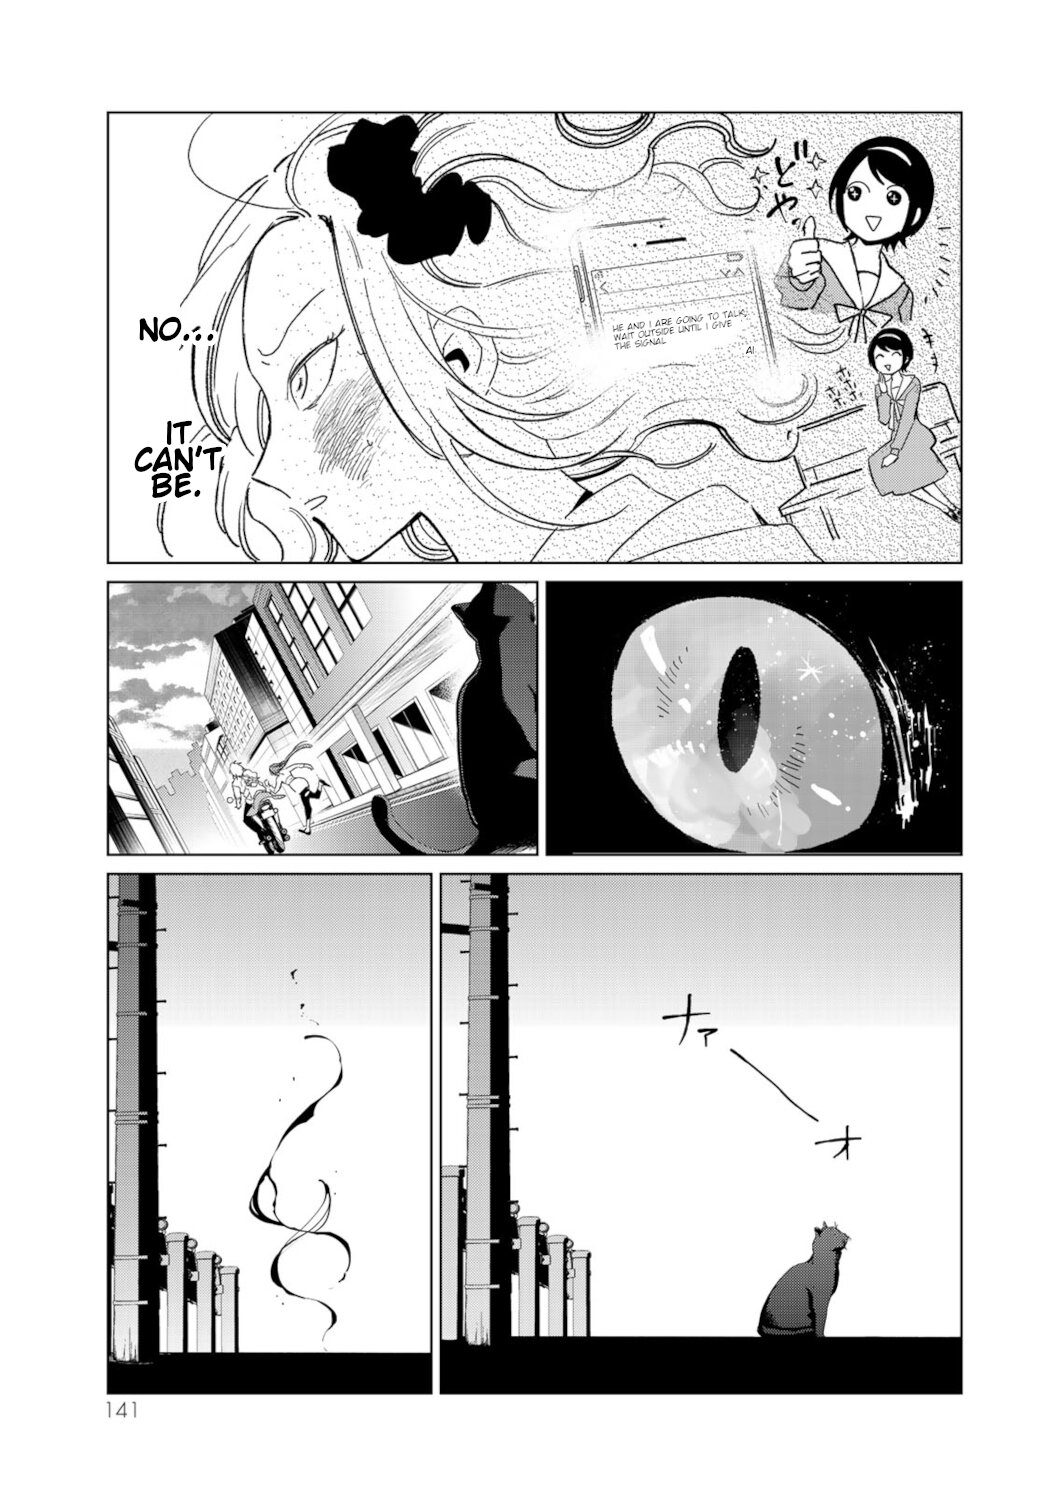 Kuroha to Nijisuke: Kuroki Majo no Divertimento Vol. 3 Ch. 13 Shinigami